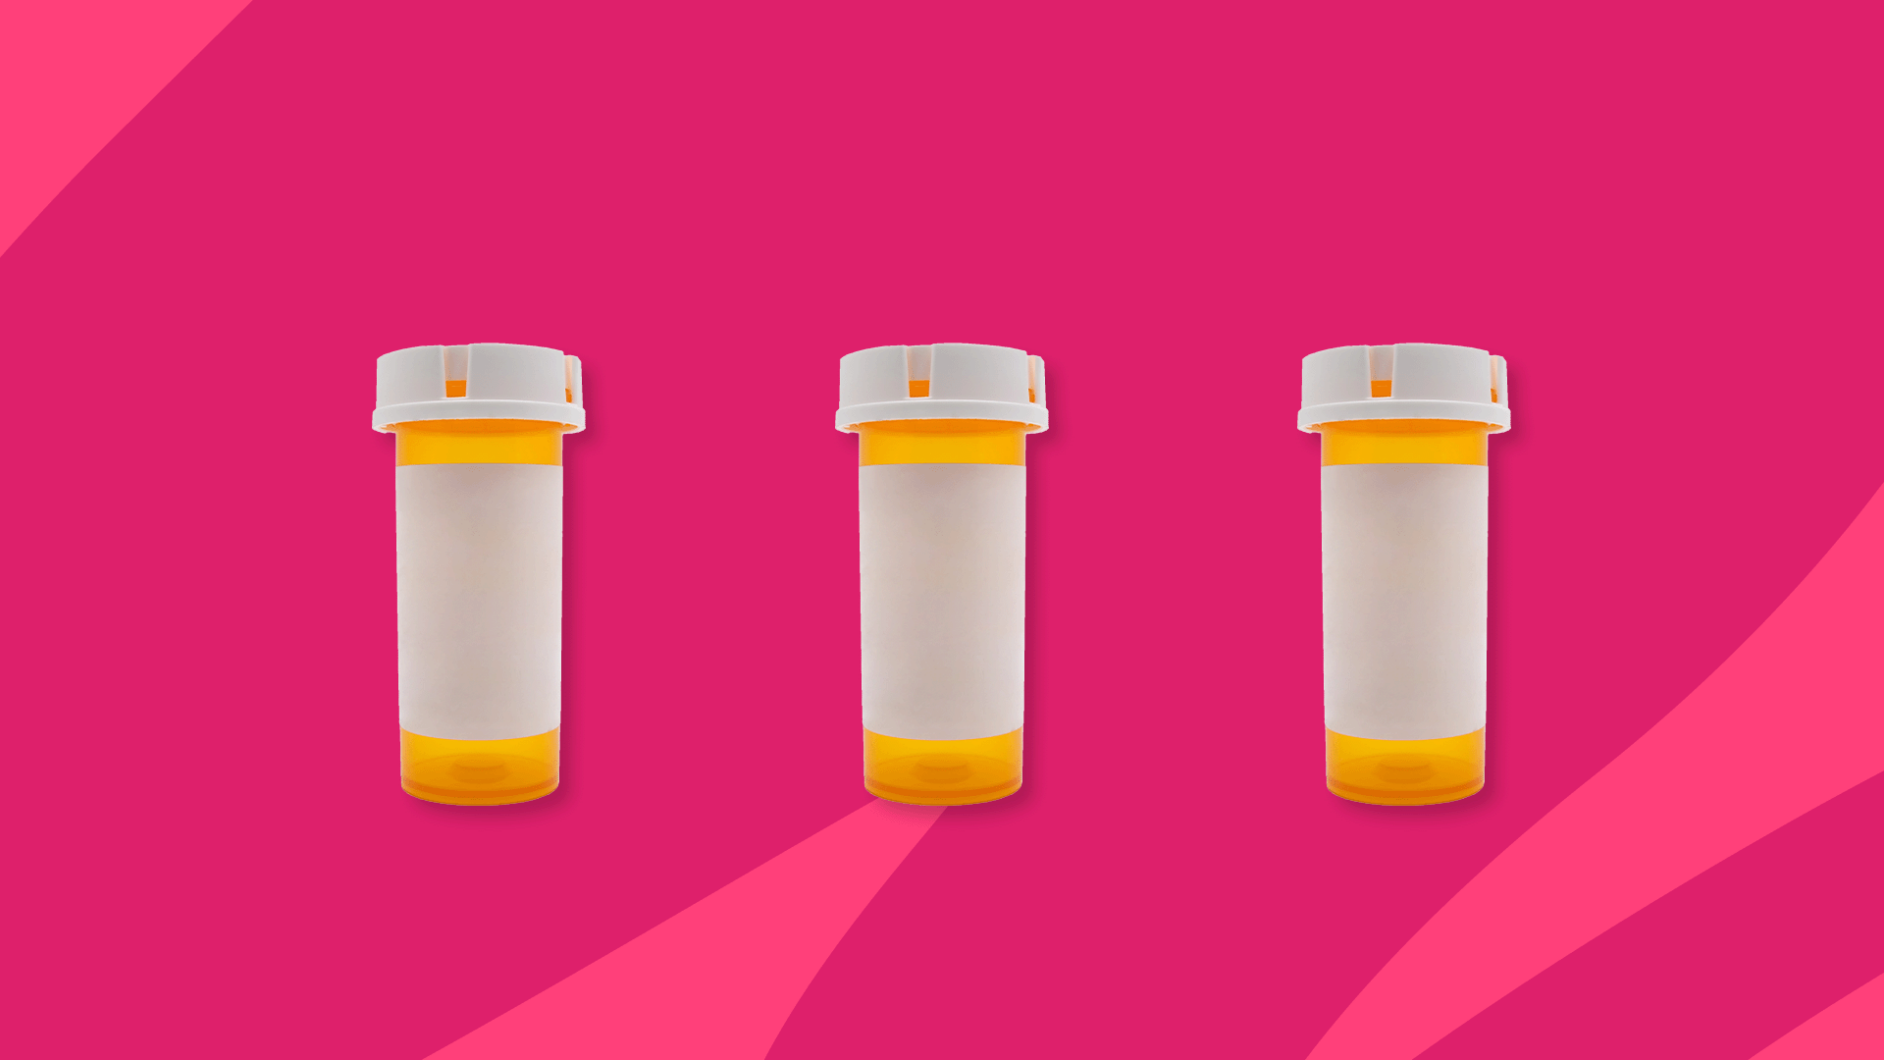 three Rx pill bottles: Nurtec alternatives